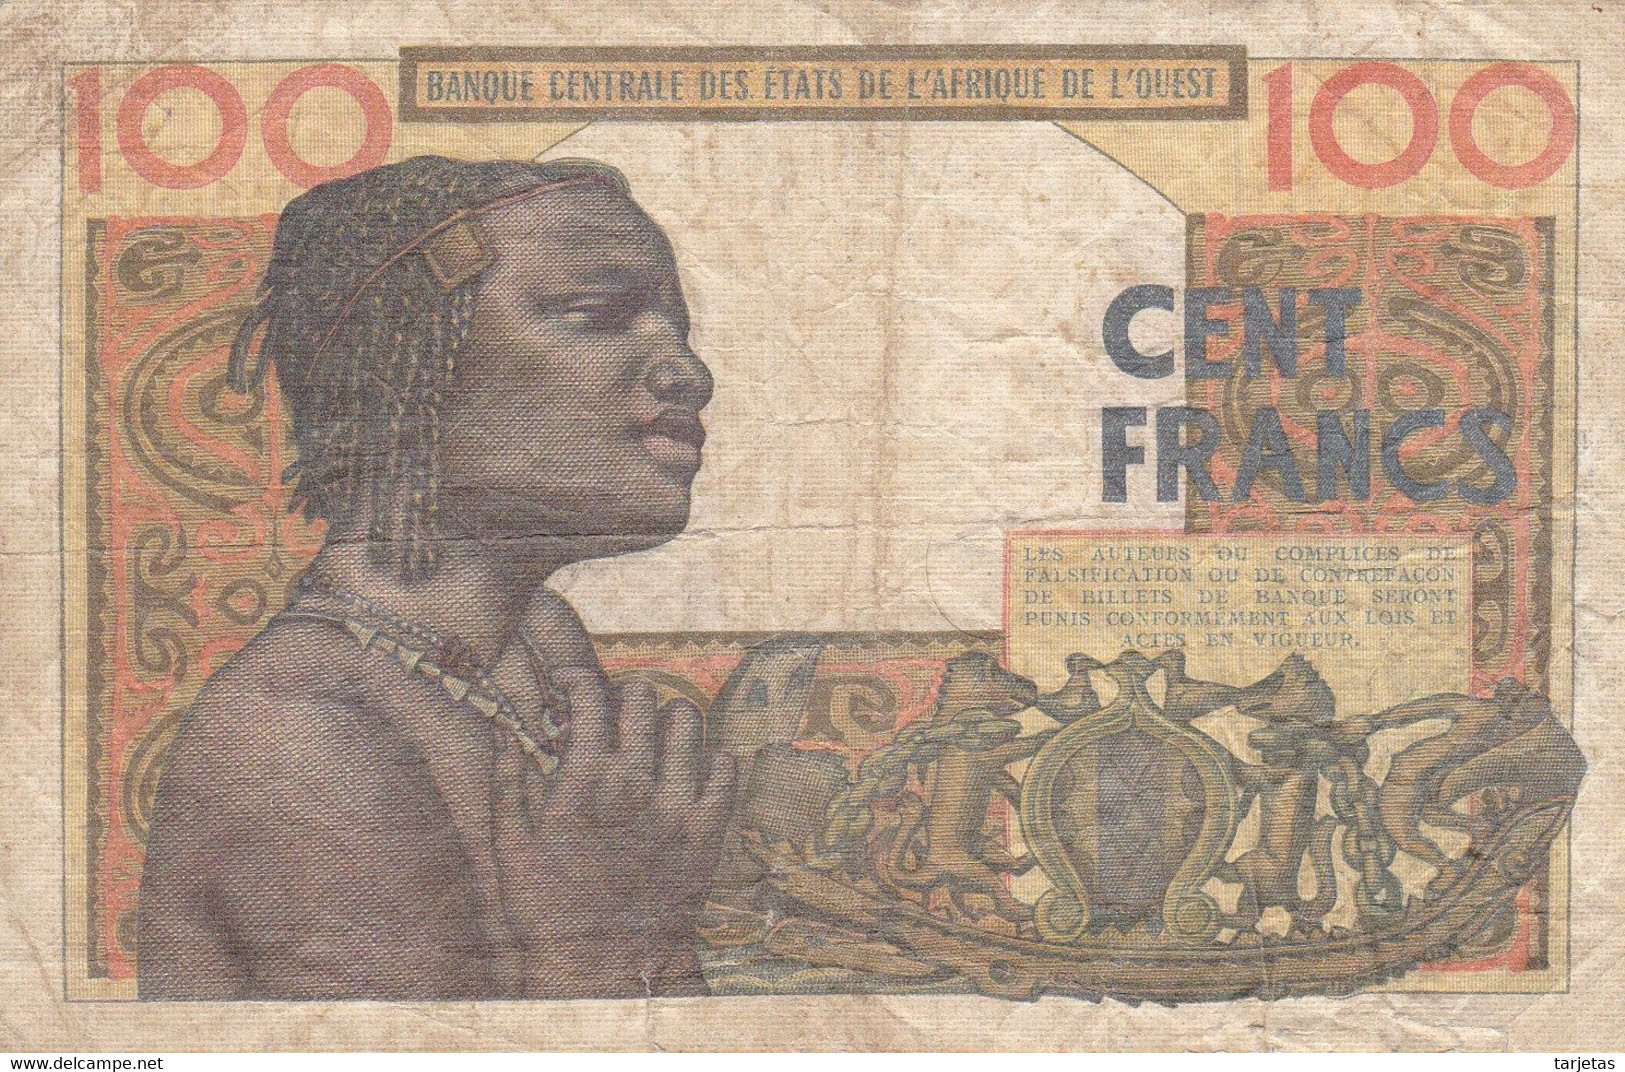 BILLETE DE SENEGAL DE 100 FRANCS DEL AÑO 1965  (BANK NOTE) - Sénégal